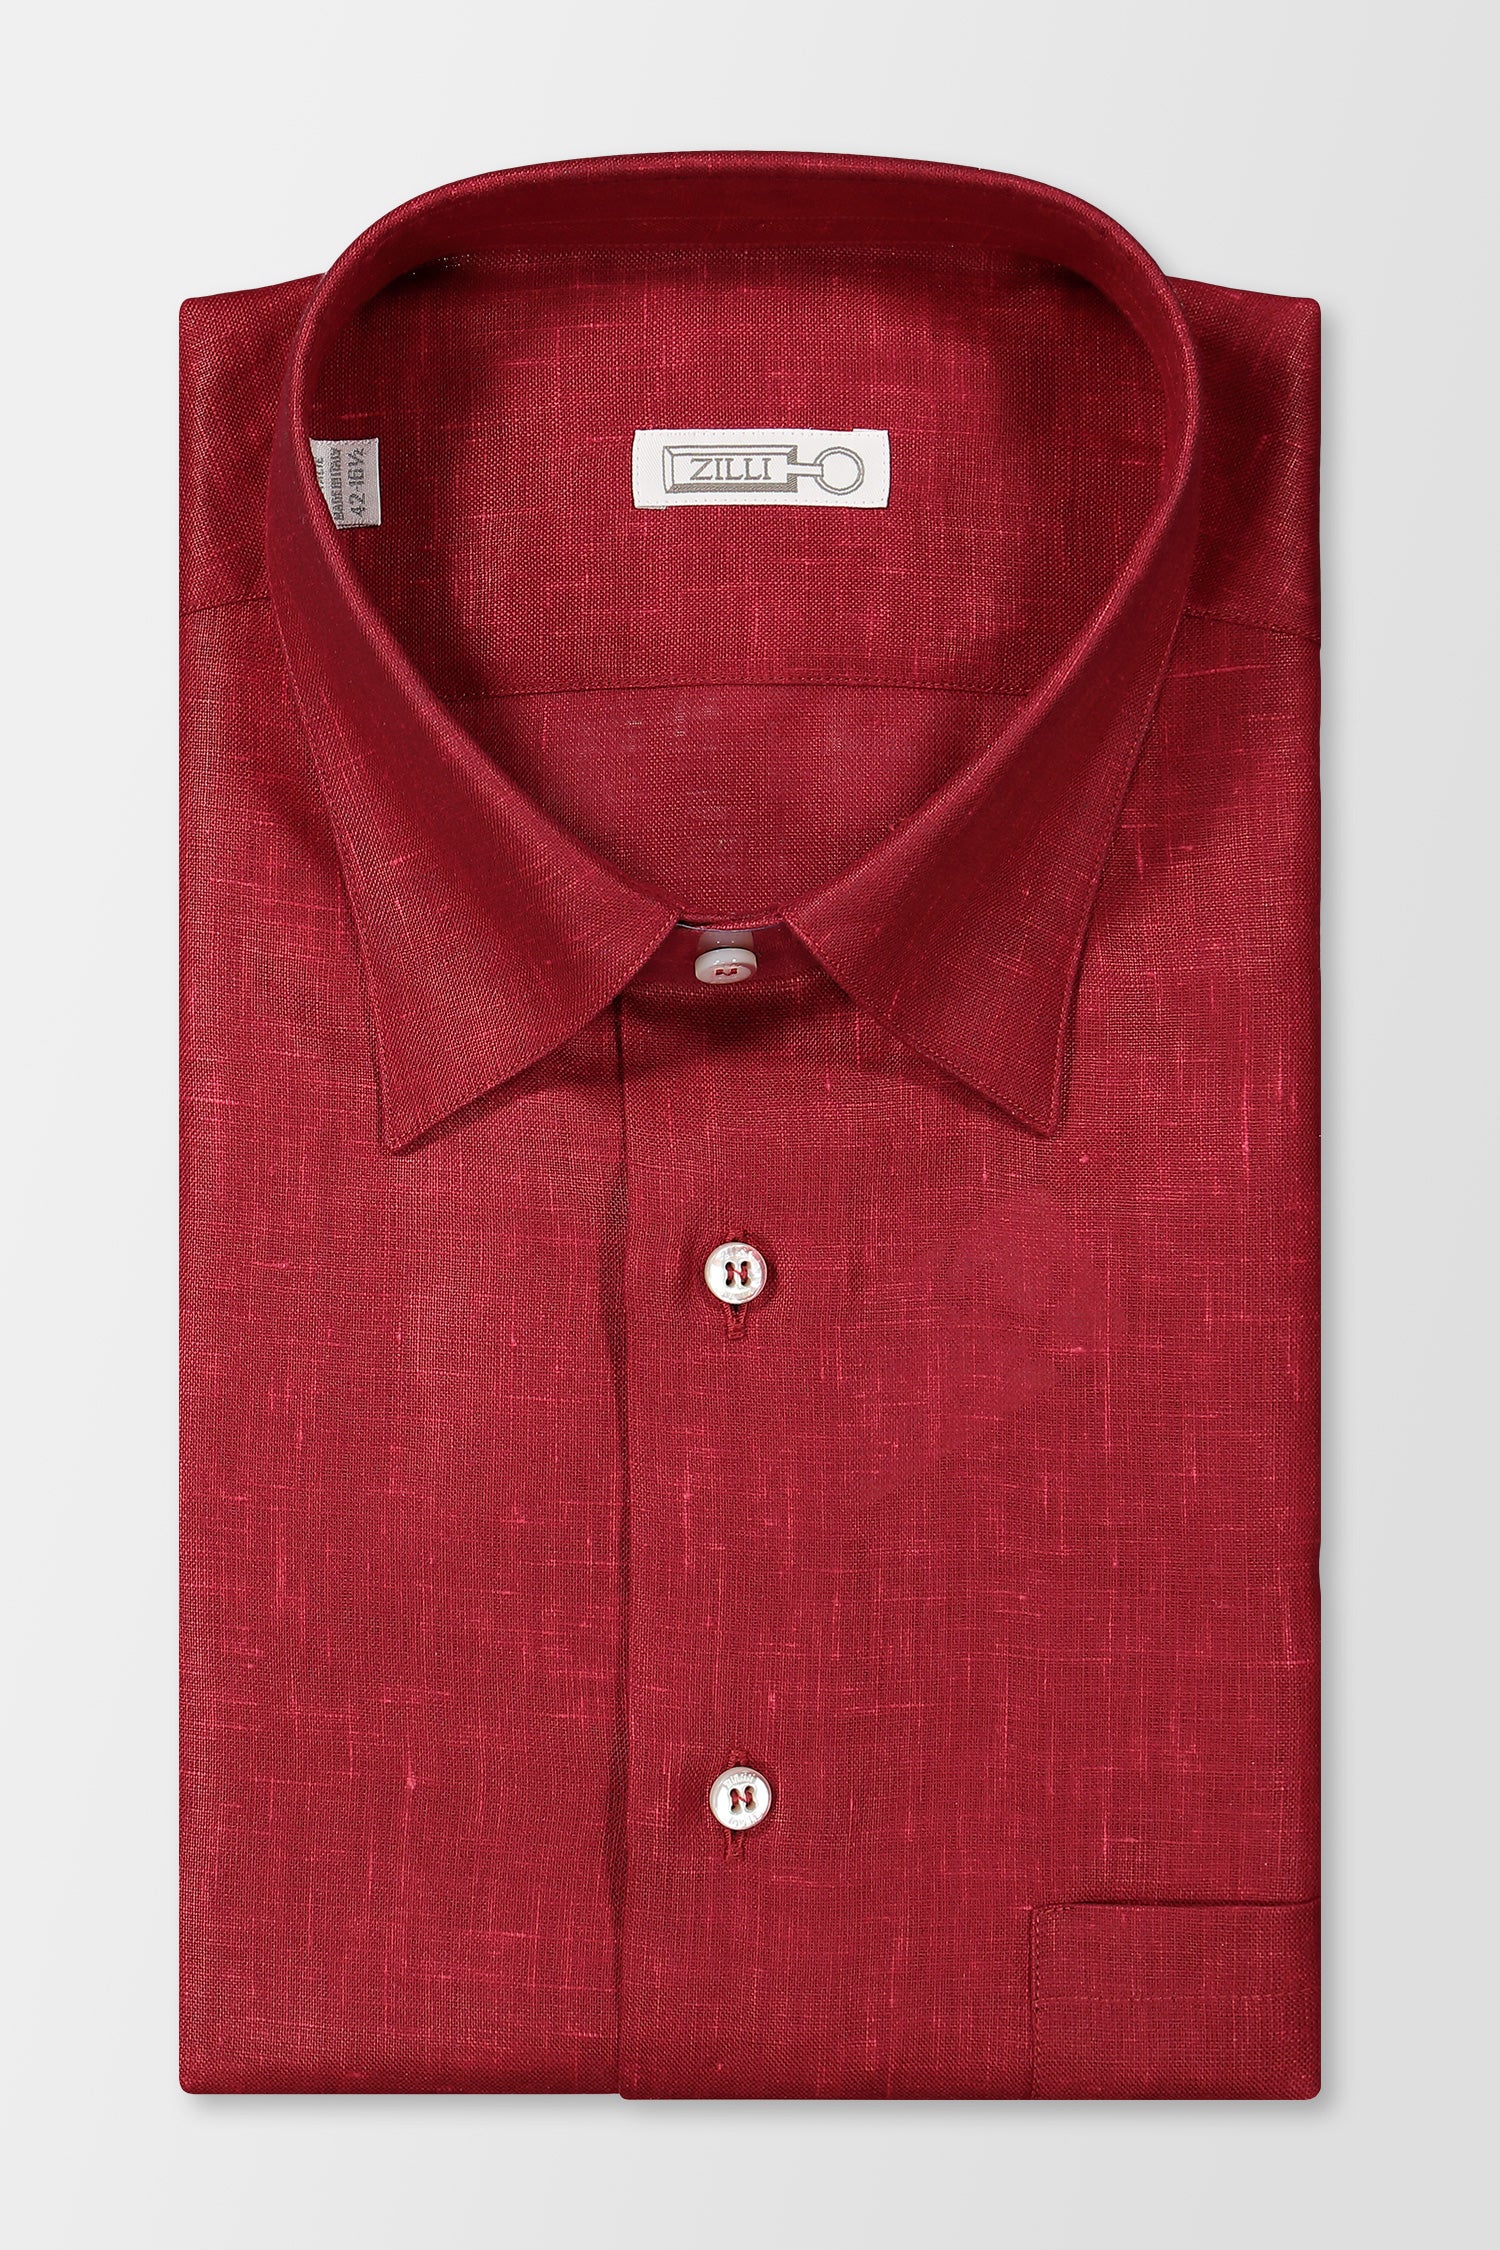 Zilli Red Linen Shirt